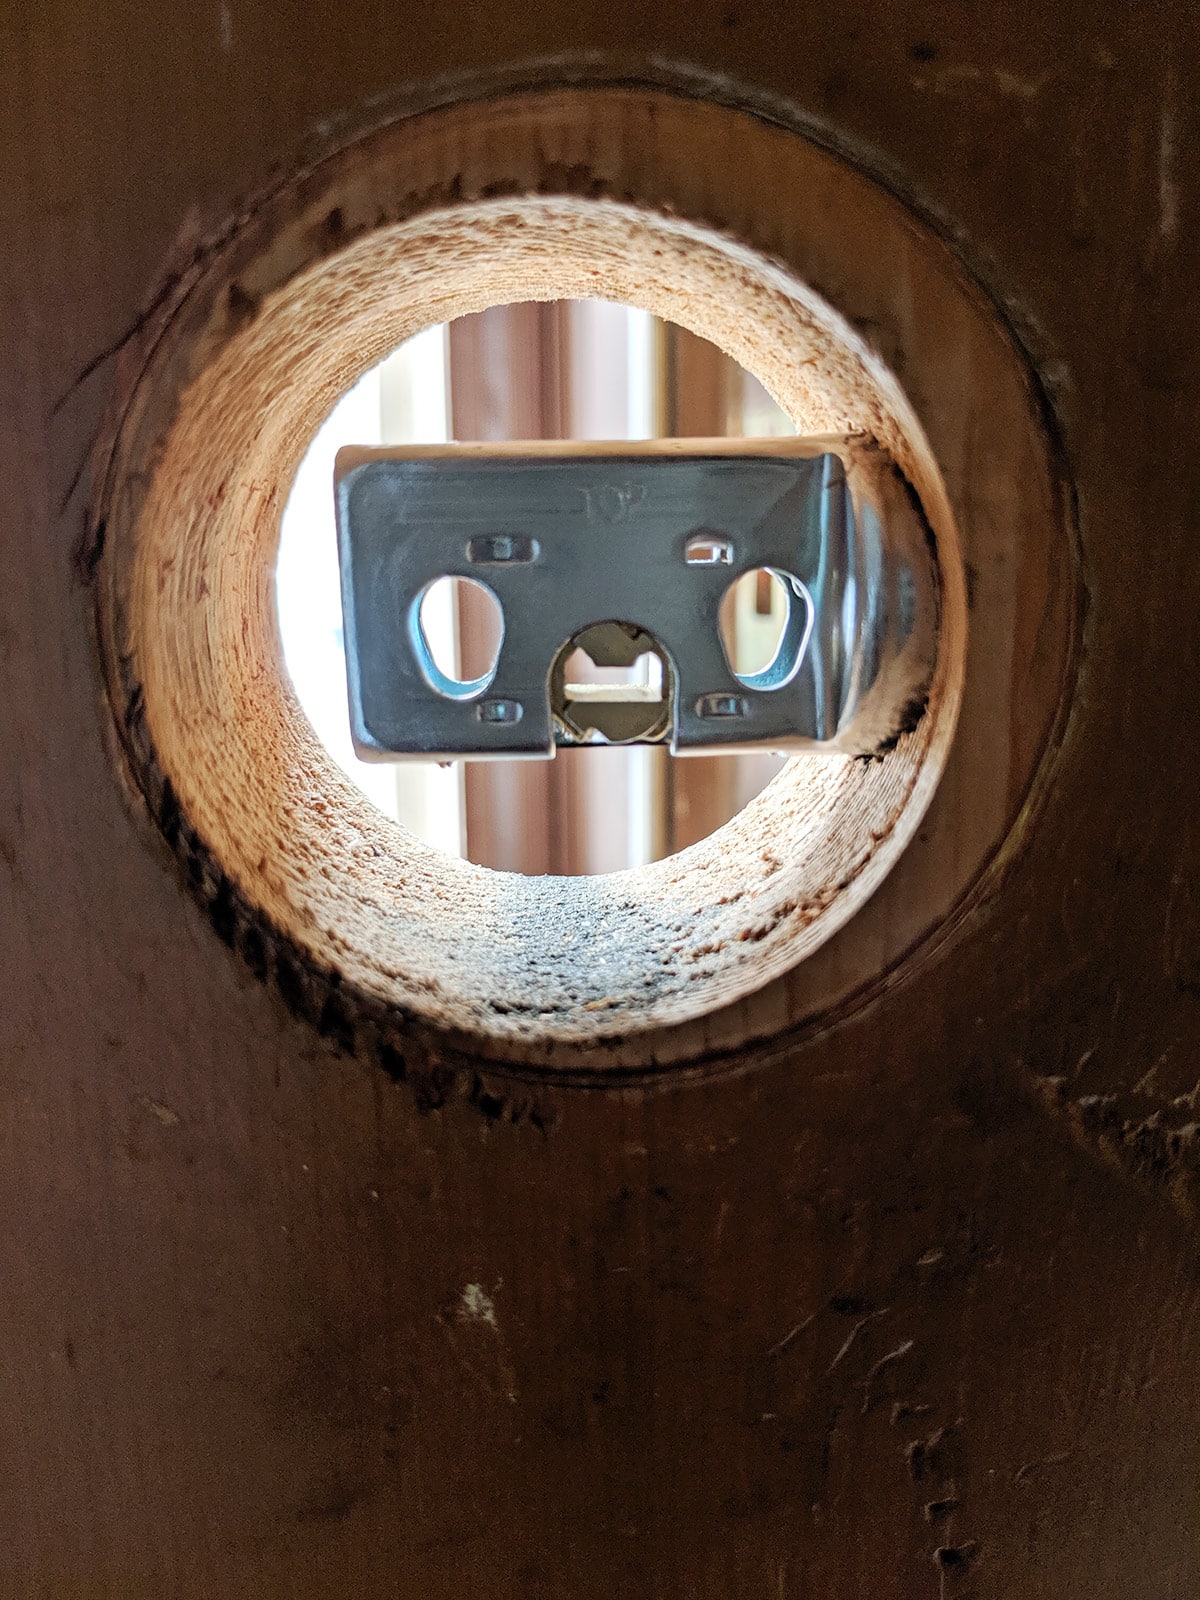 The deadbolt itself has an extender to fit most (if not all) exterior door lock spots.